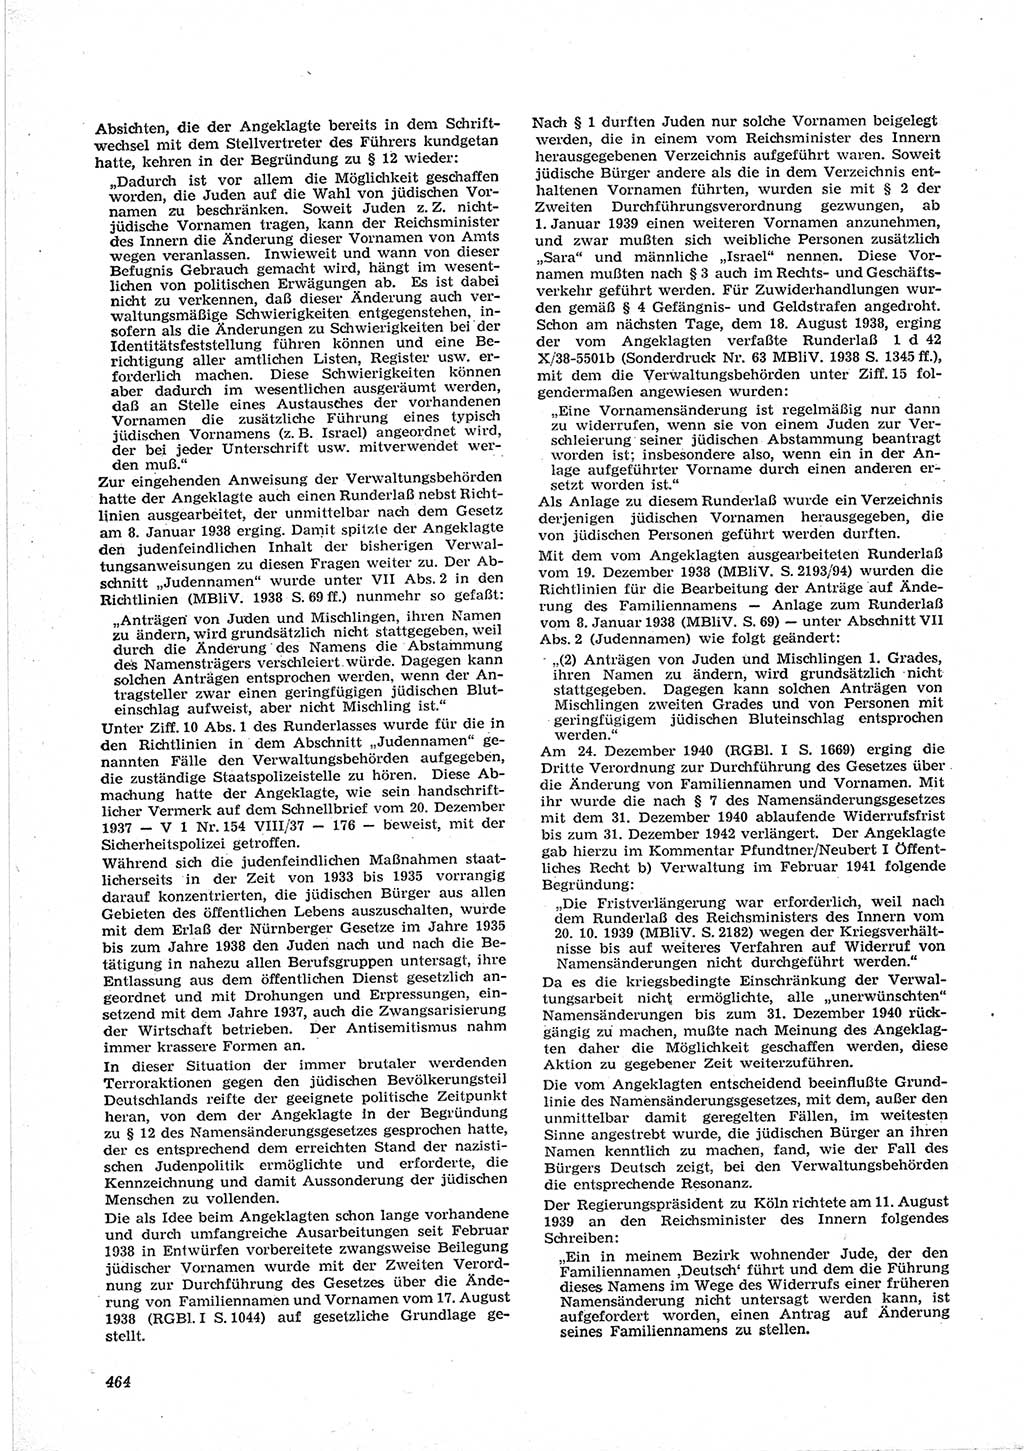 Neue Justiz (NJ), Zeitschrift für Recht und Rechtswissenschaft [Deutsche Demokratische Republik (DDR)], 17. Jahrgang 1963, Seite 464 (NJ DDR 1963, S. 464)